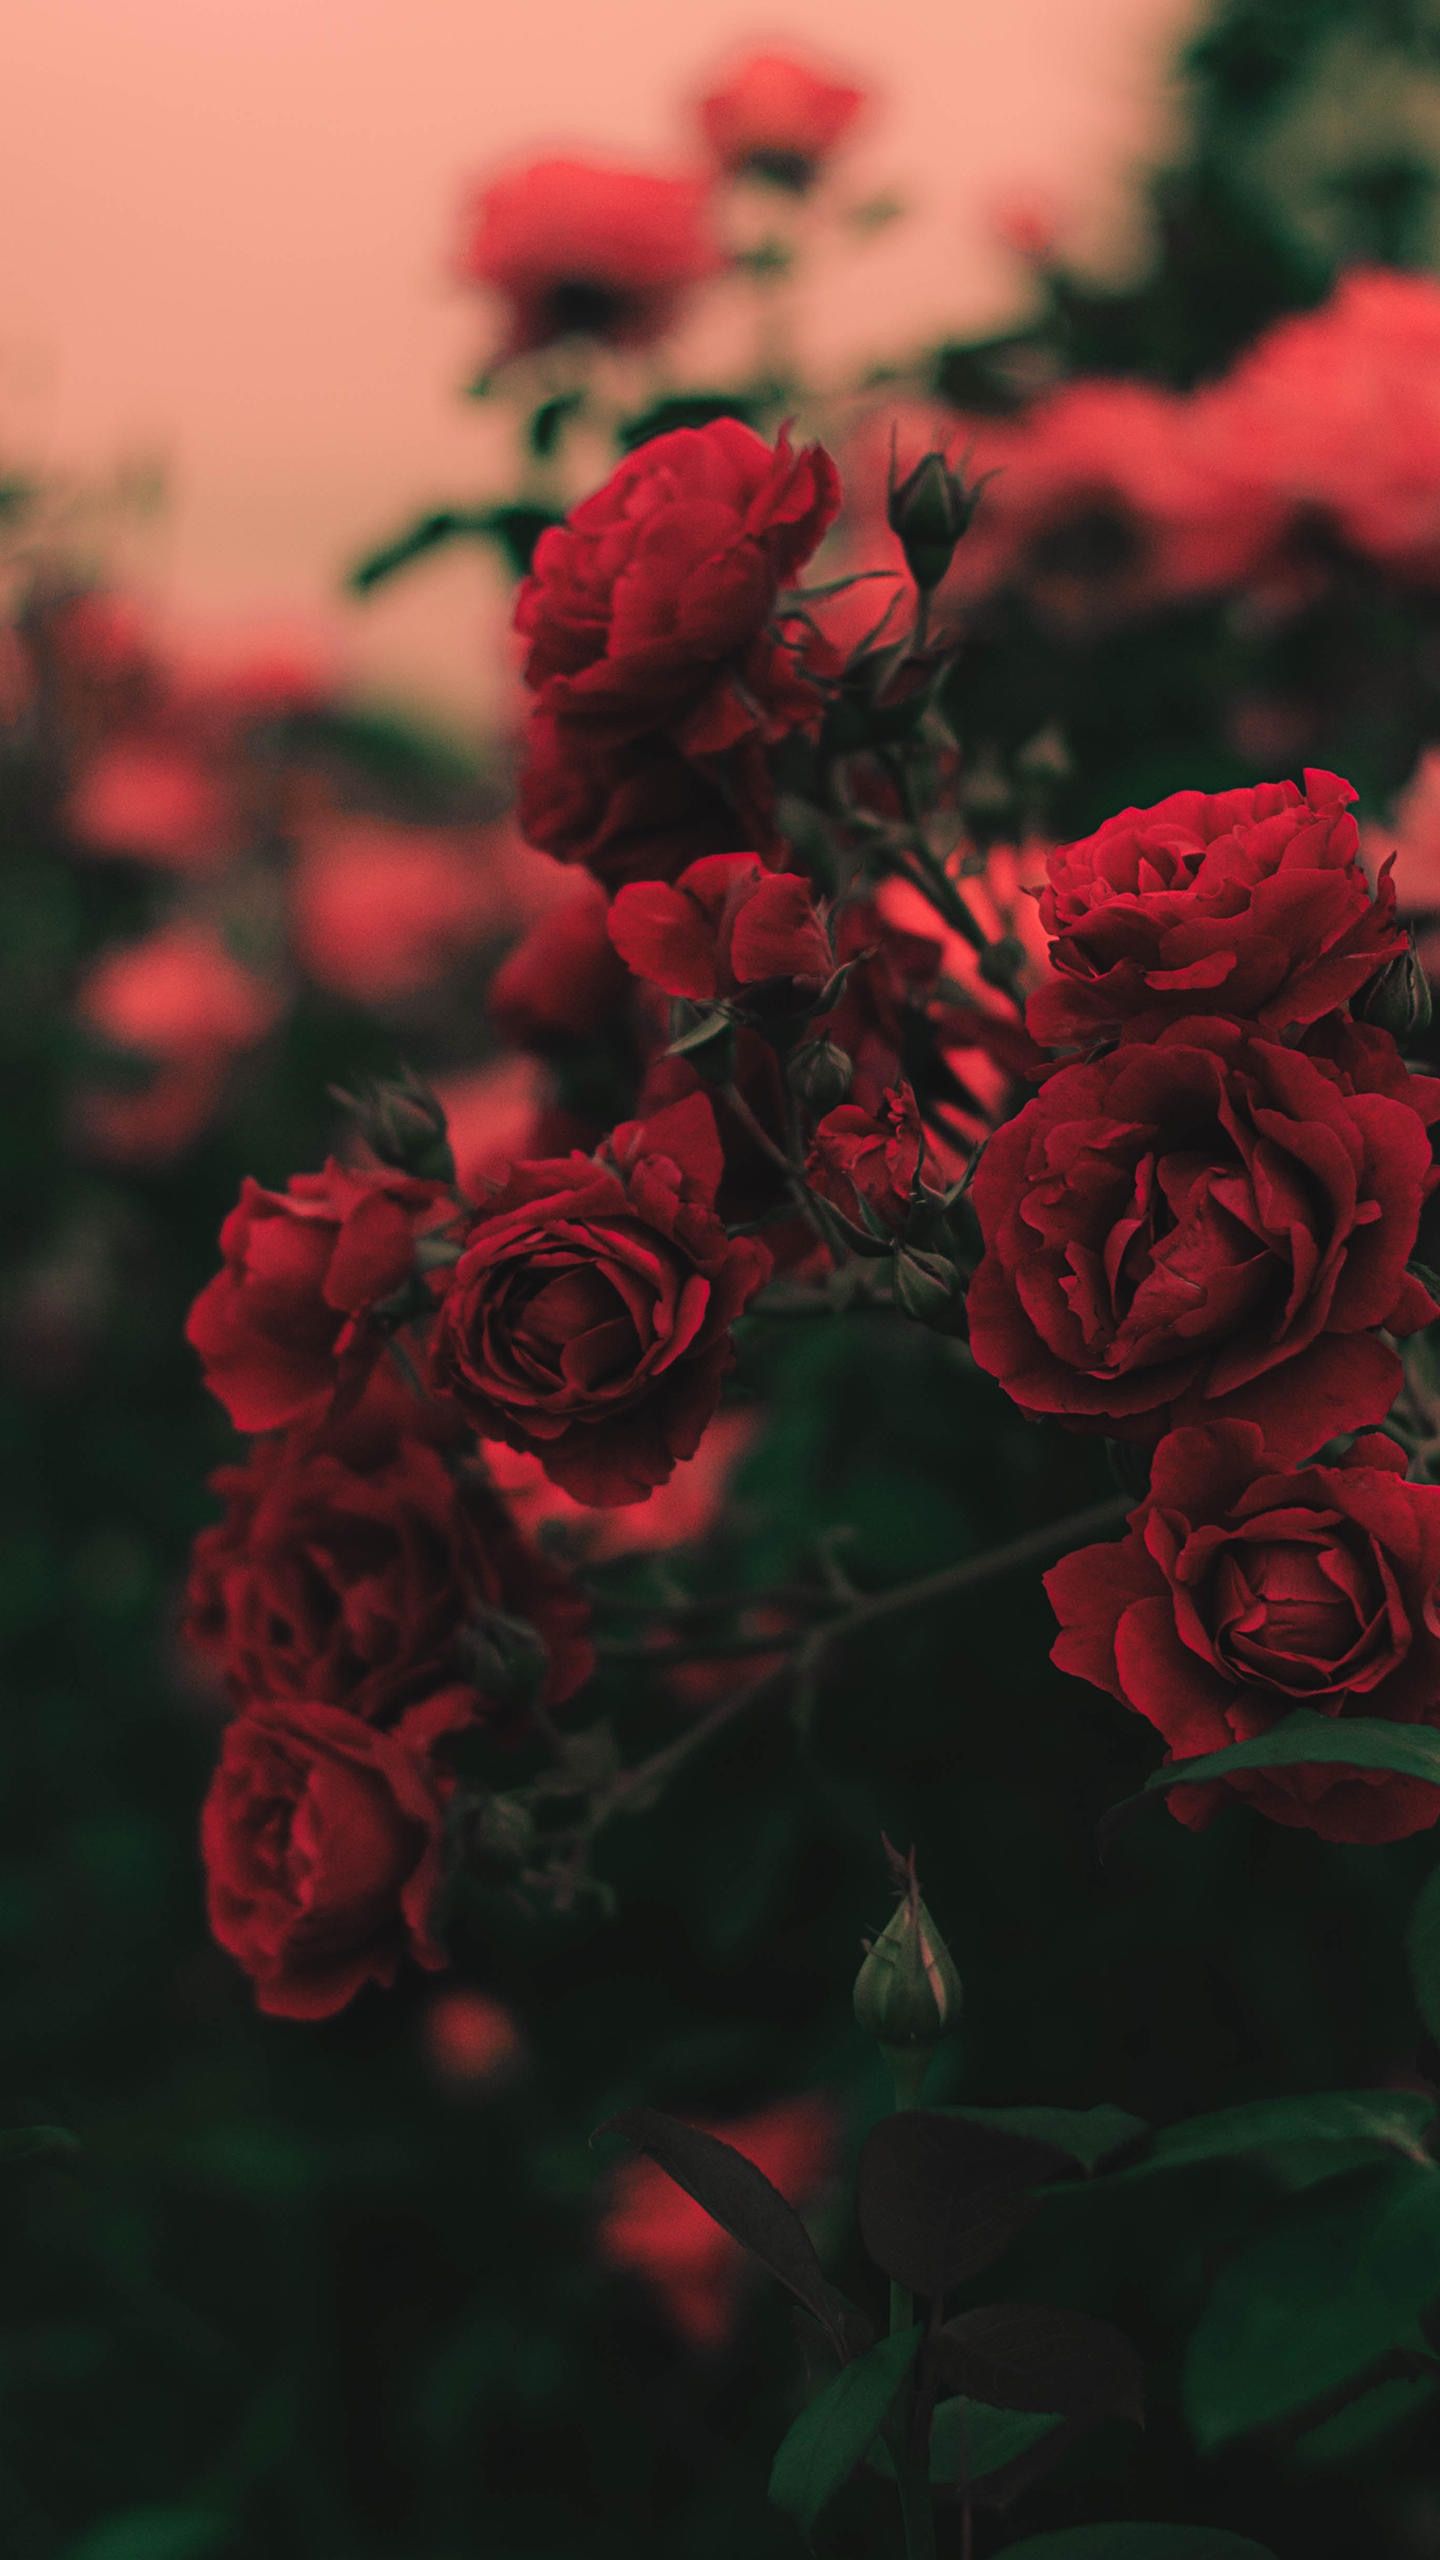 l'amour est comme le papier peint rose,fleur,plante à fleurs,rouge,roses de jardin,rose